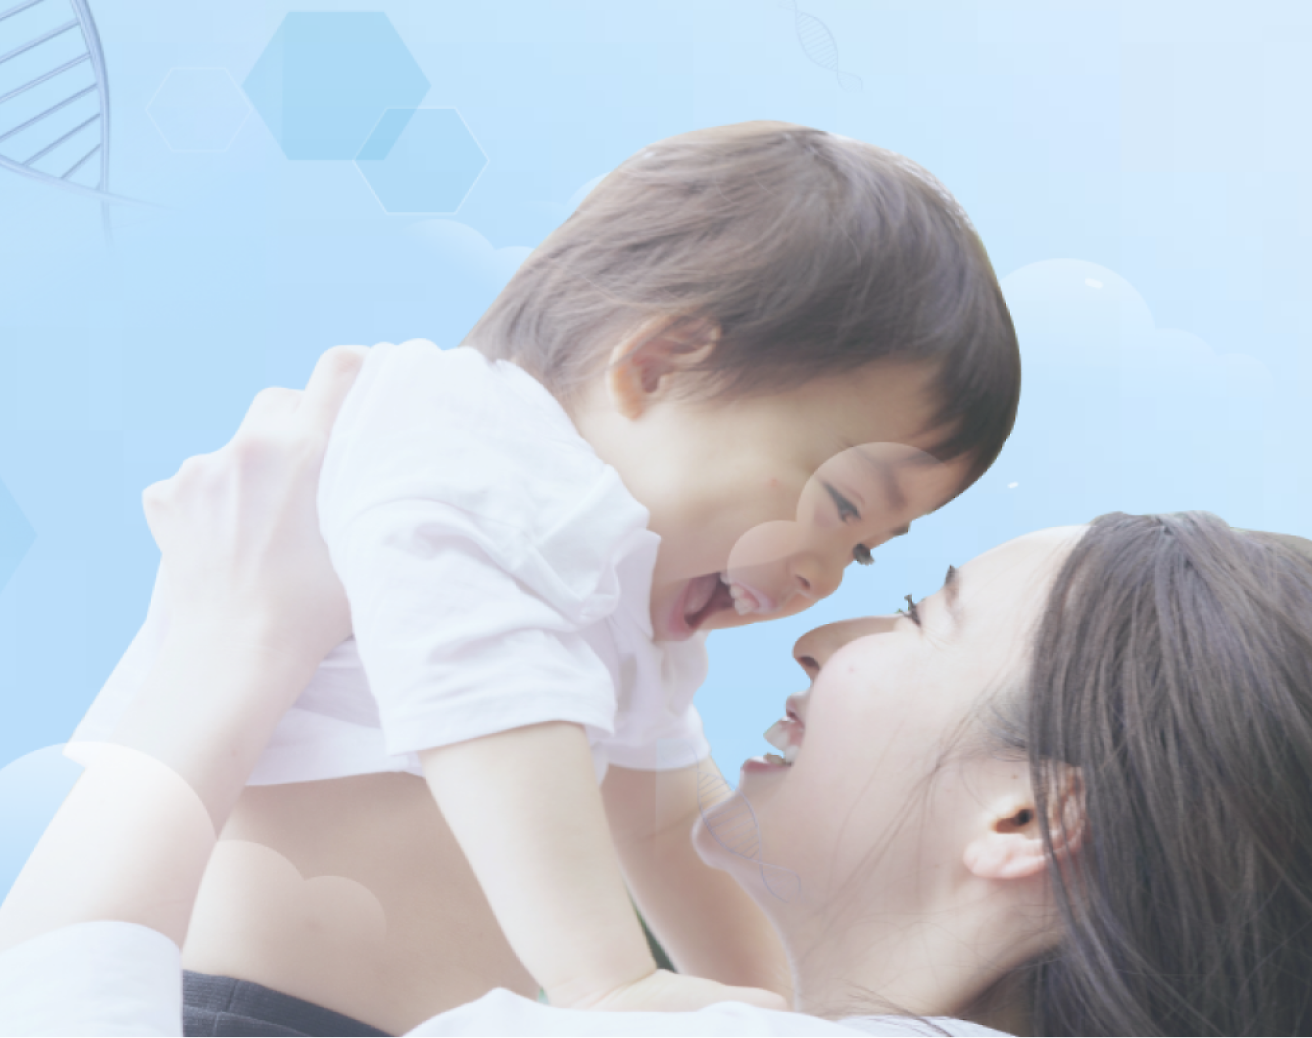 Ein fröhliches kleines Kind, das von seiner Mutter vor einem weichen blauen Hintergrund mit hellen Grafiken in der Luft gehalten wird, und beide lächeln.